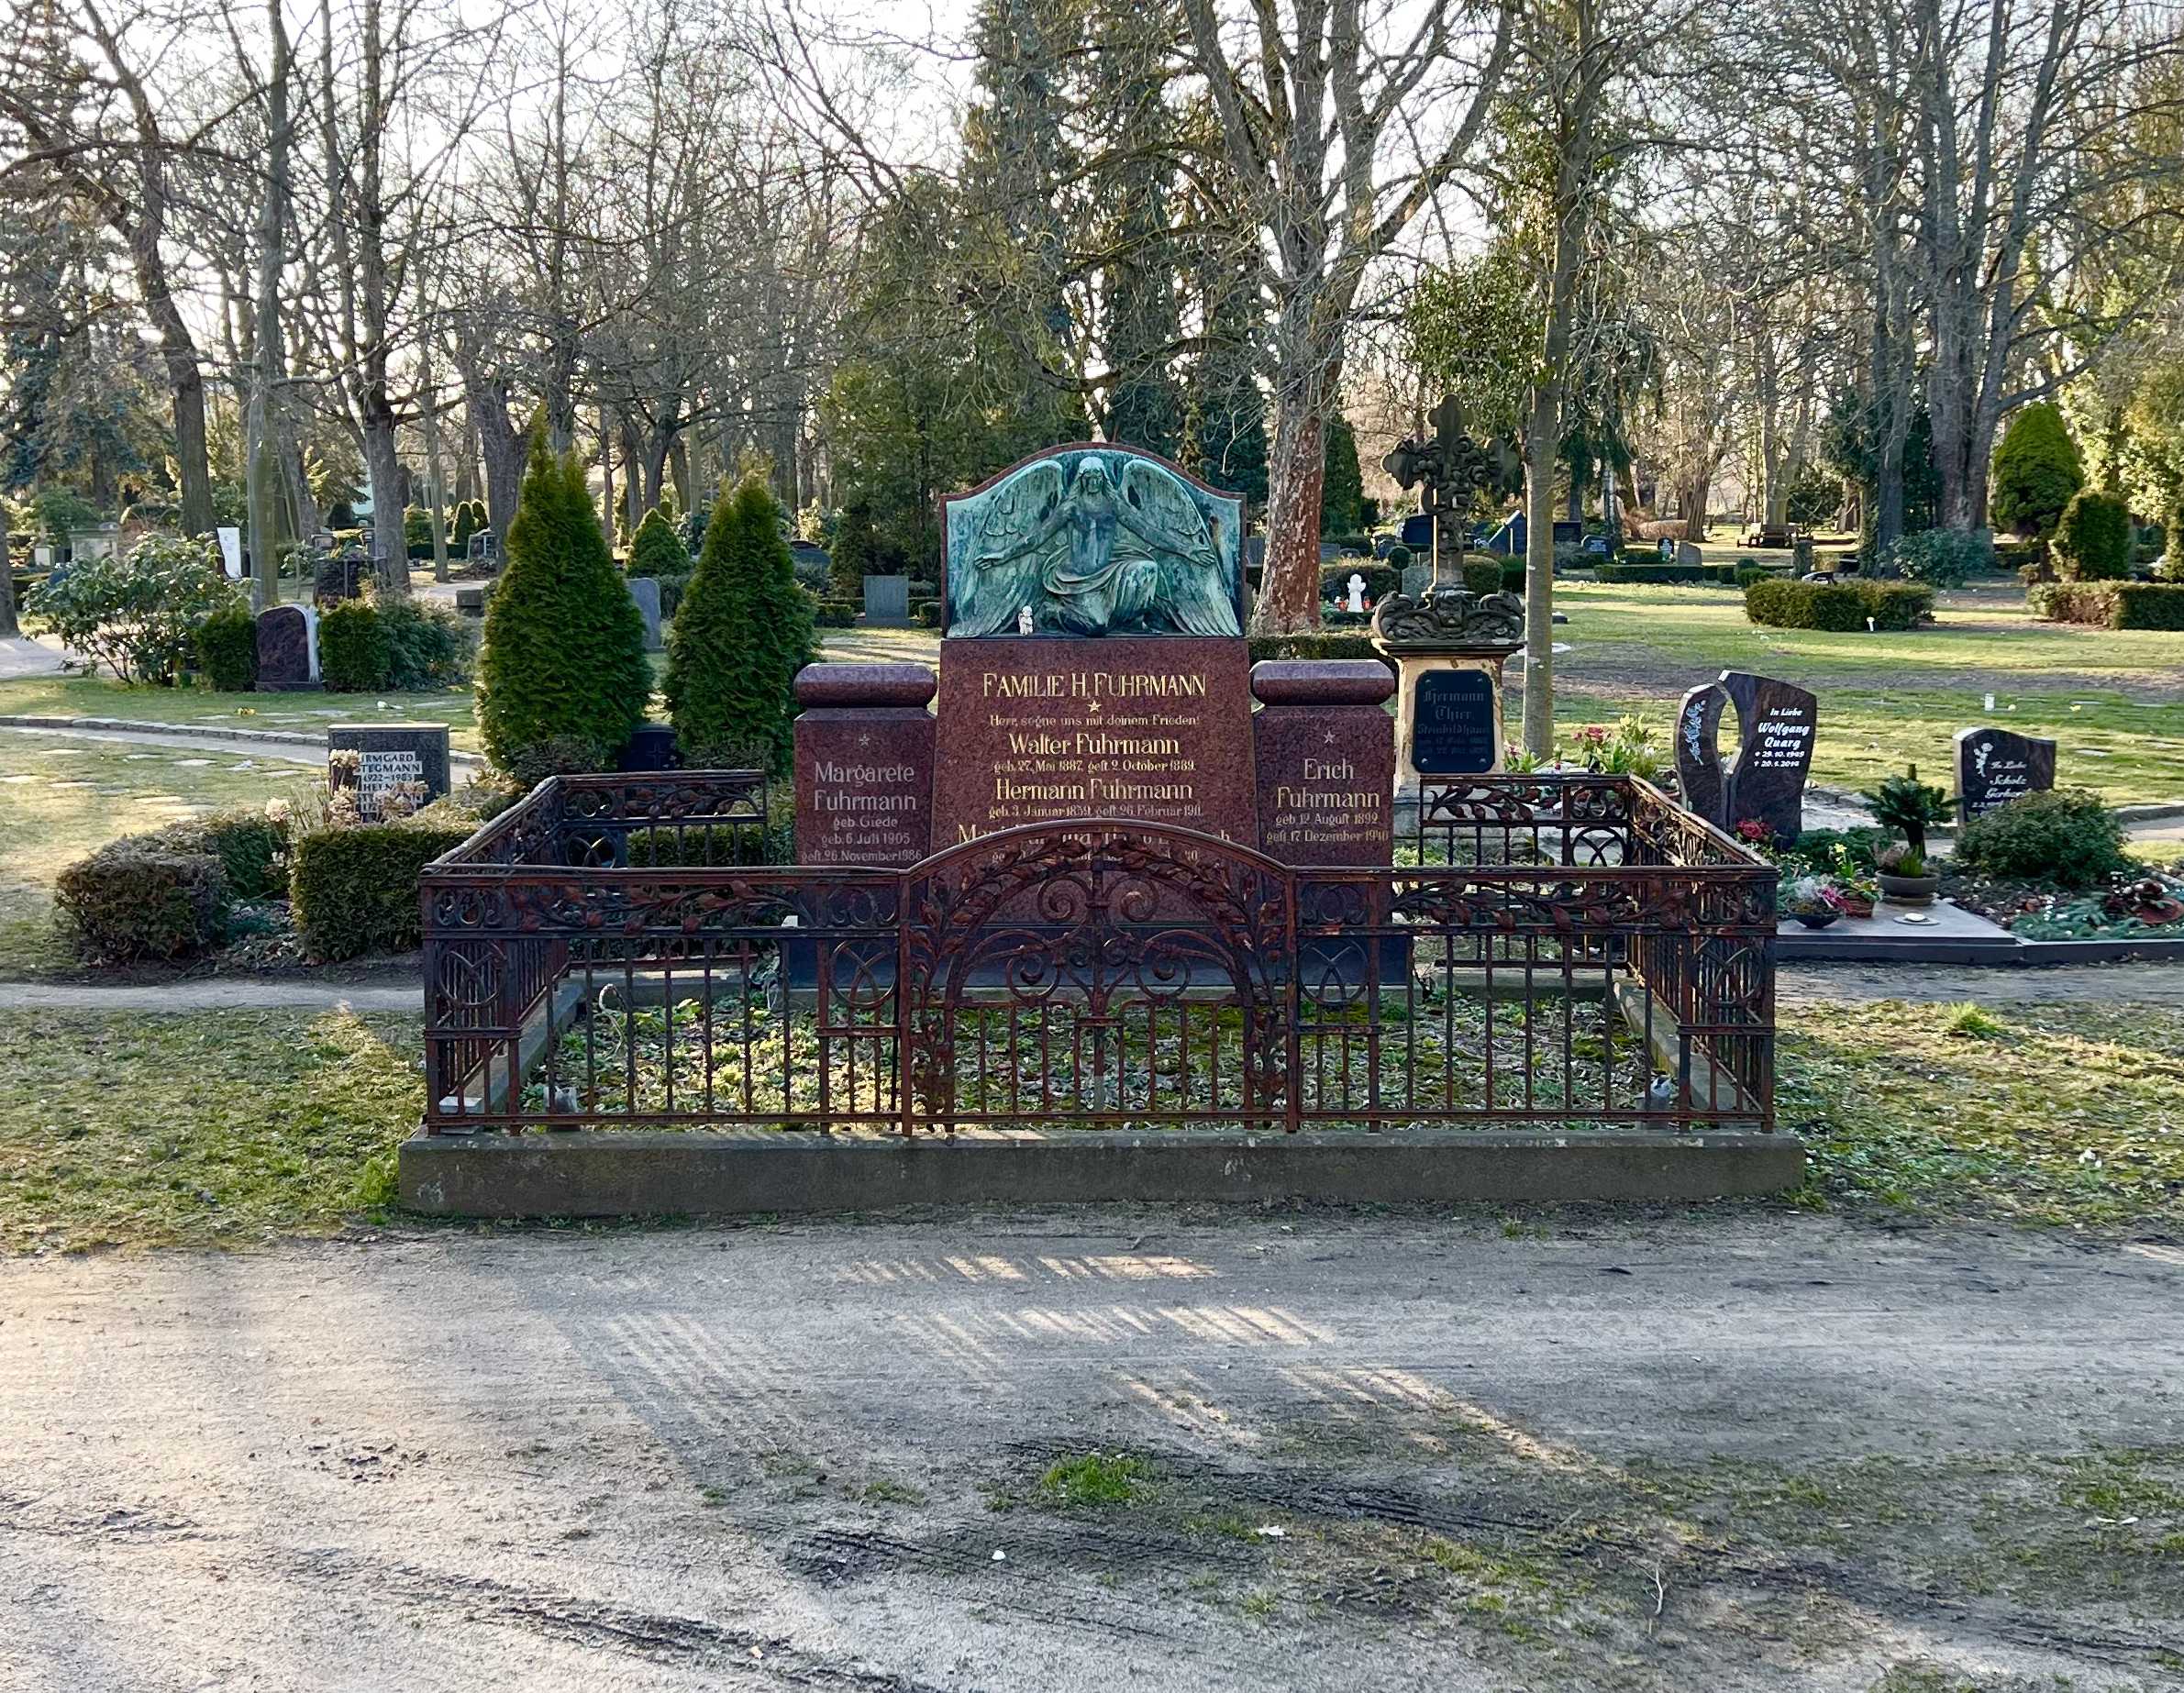 Grabstein Erich Fuhrmann, Neuer Friedhof Wittenberg